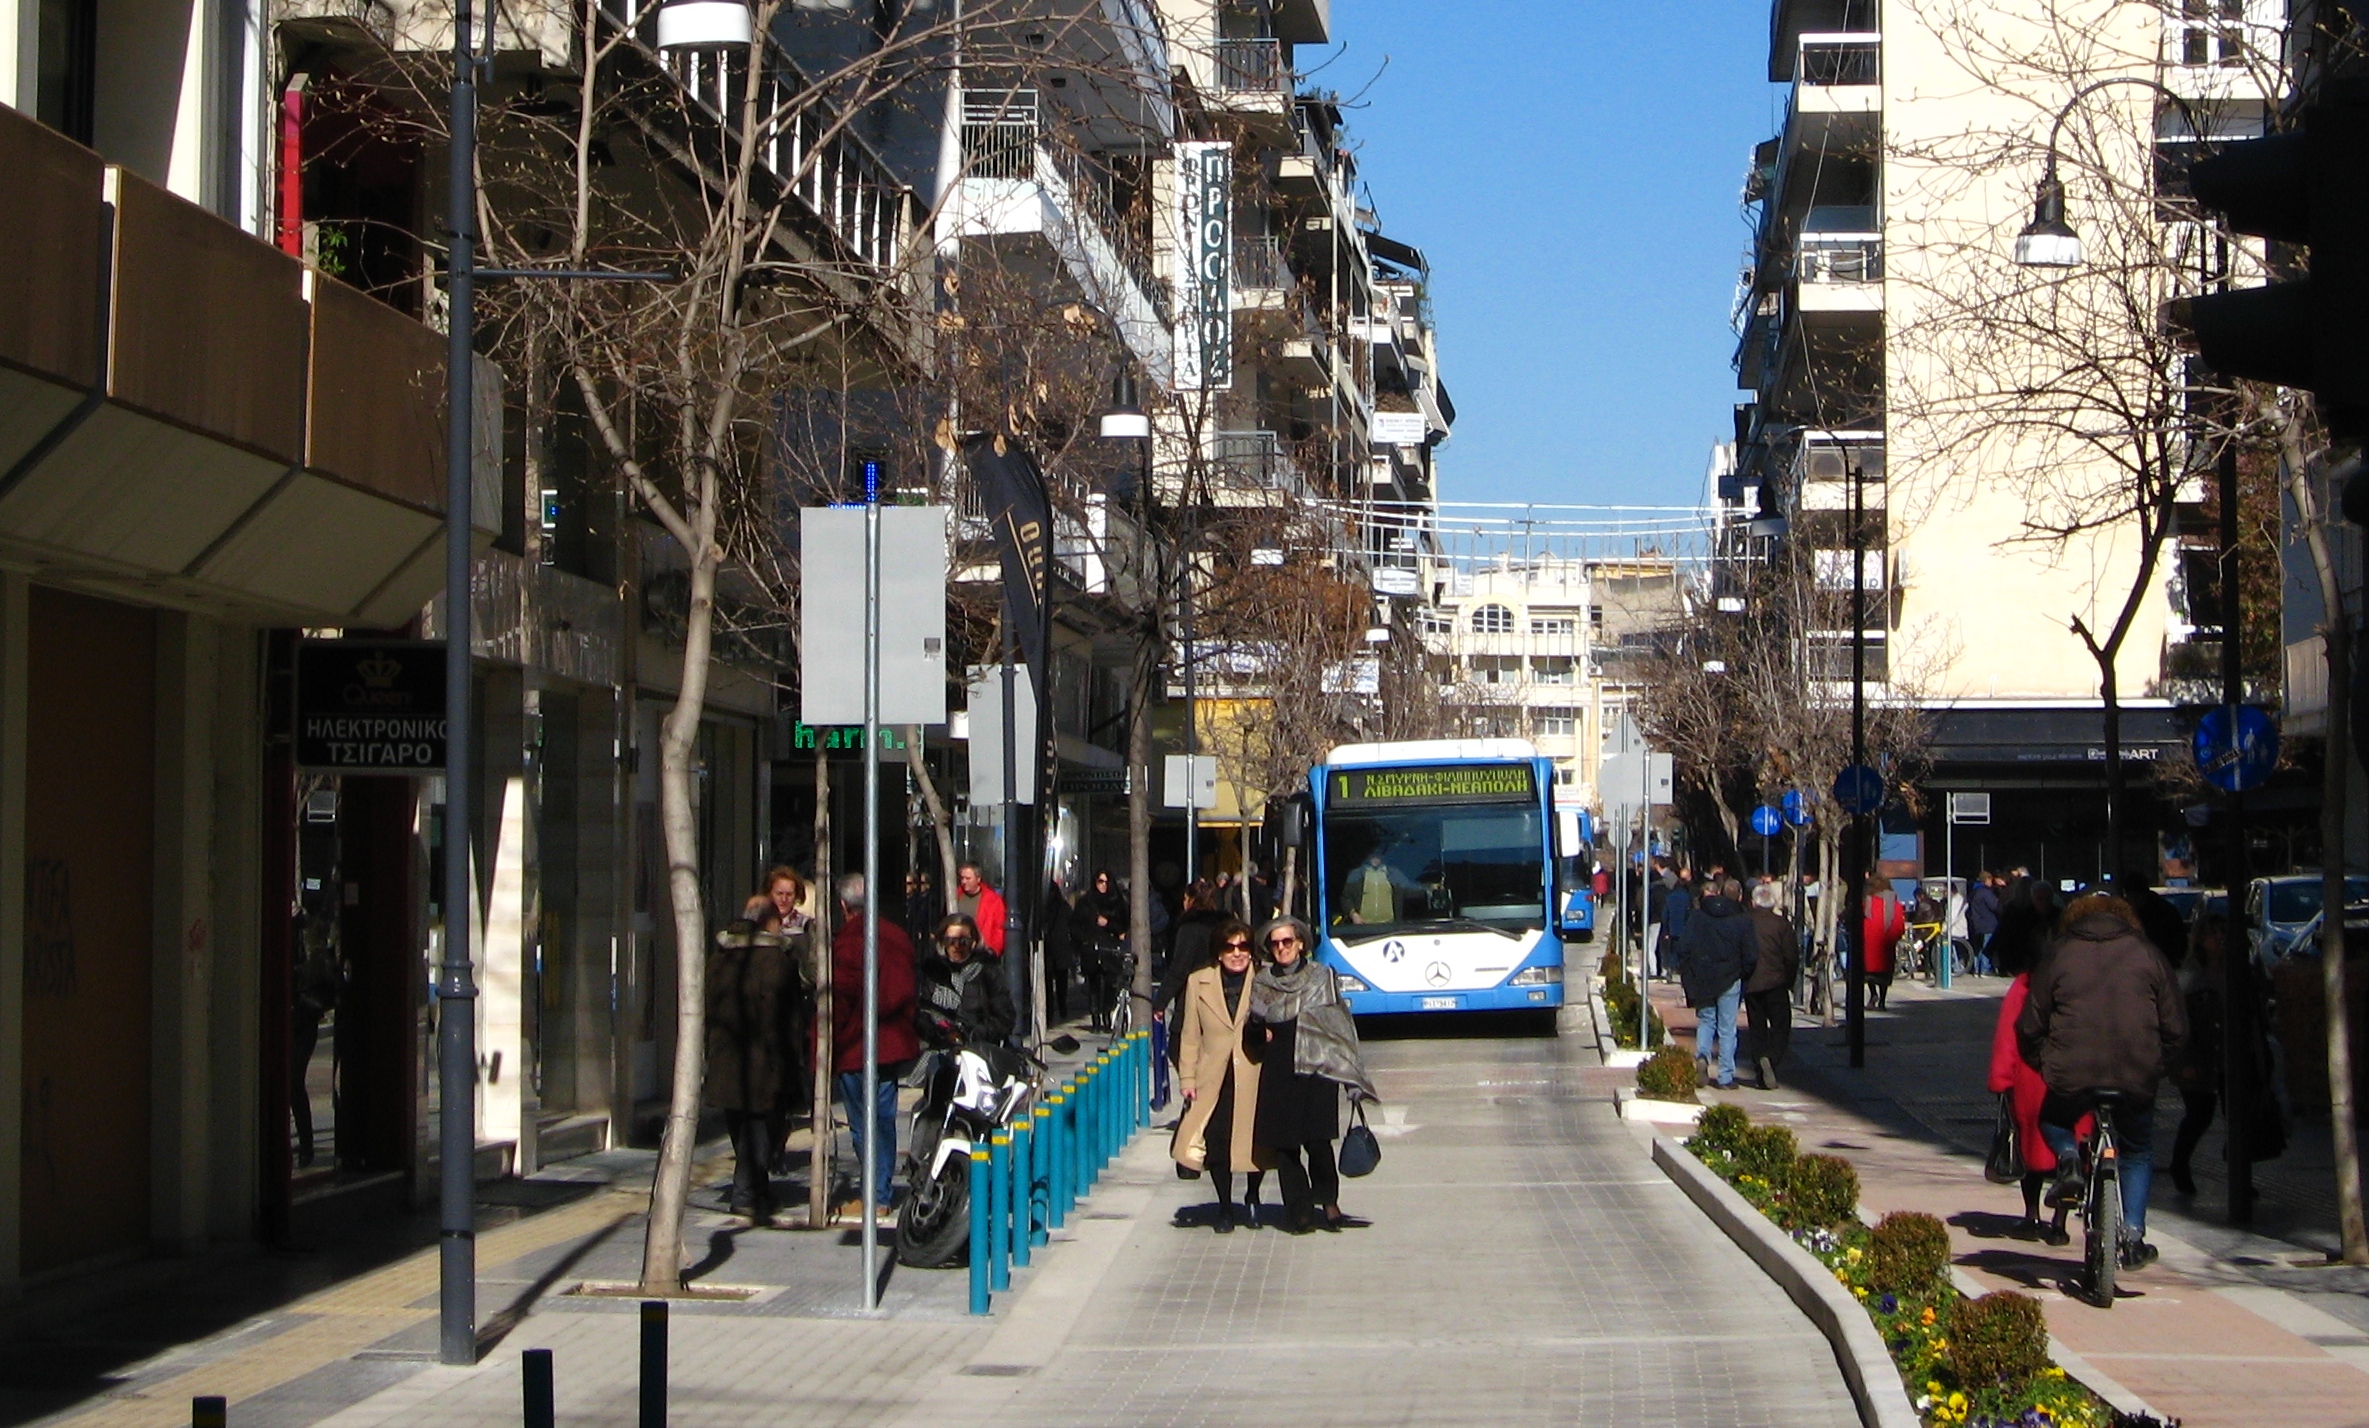 Νέος ευρωπαϊκός έπαινος στην Λάρισα για τη βιώσιμη κινητικότητα